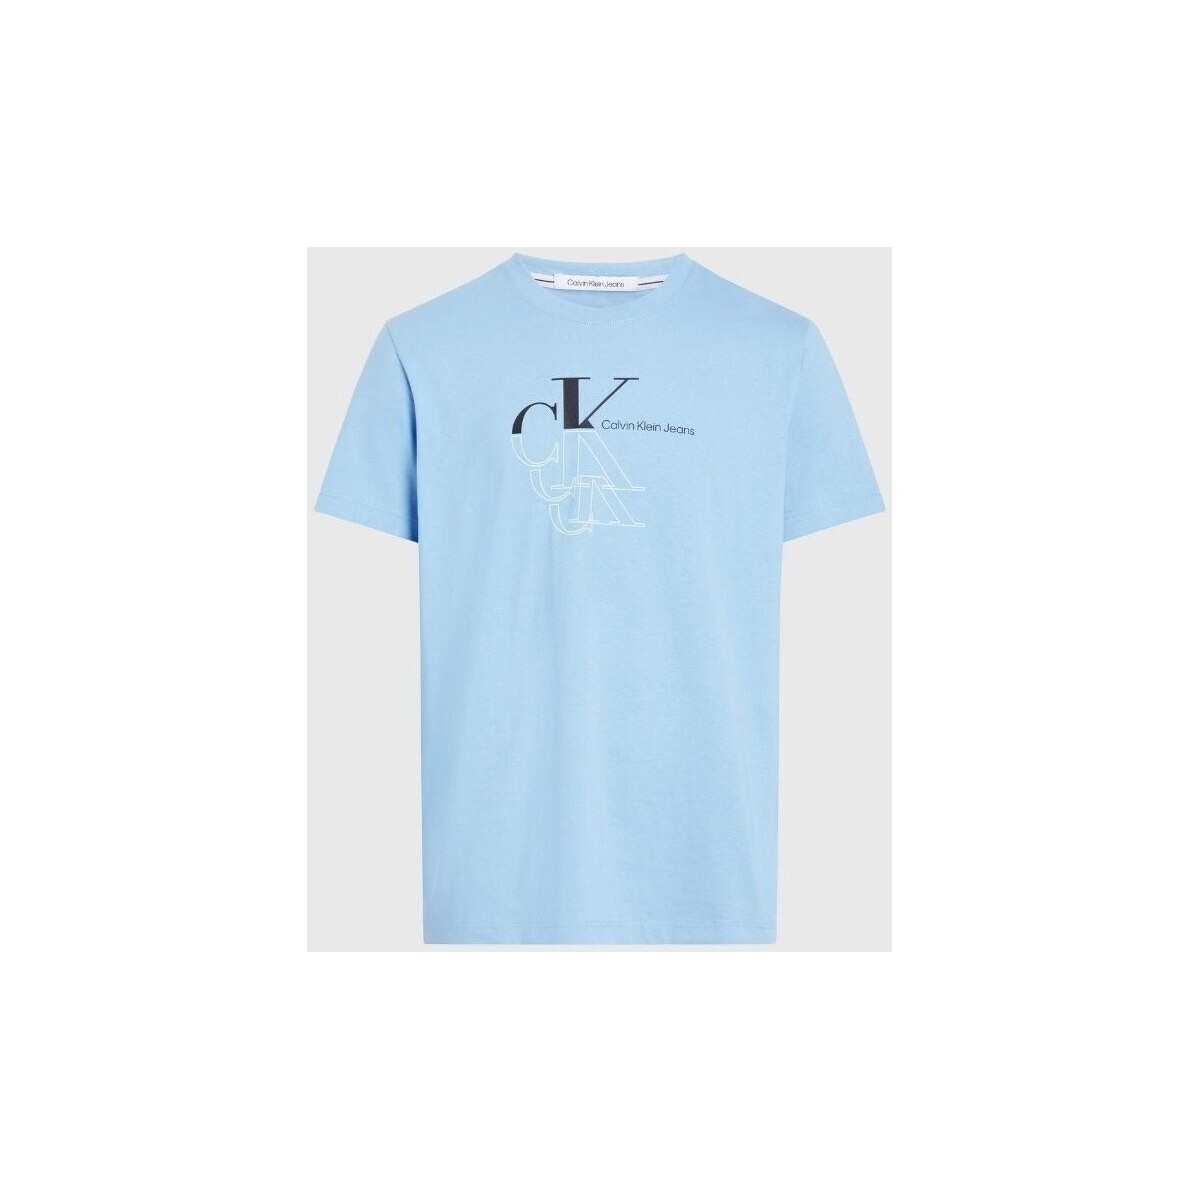 Textiel Heren T-shirts korte mouwen Calvin Klein Jeans J30J325352CEZ Blauw